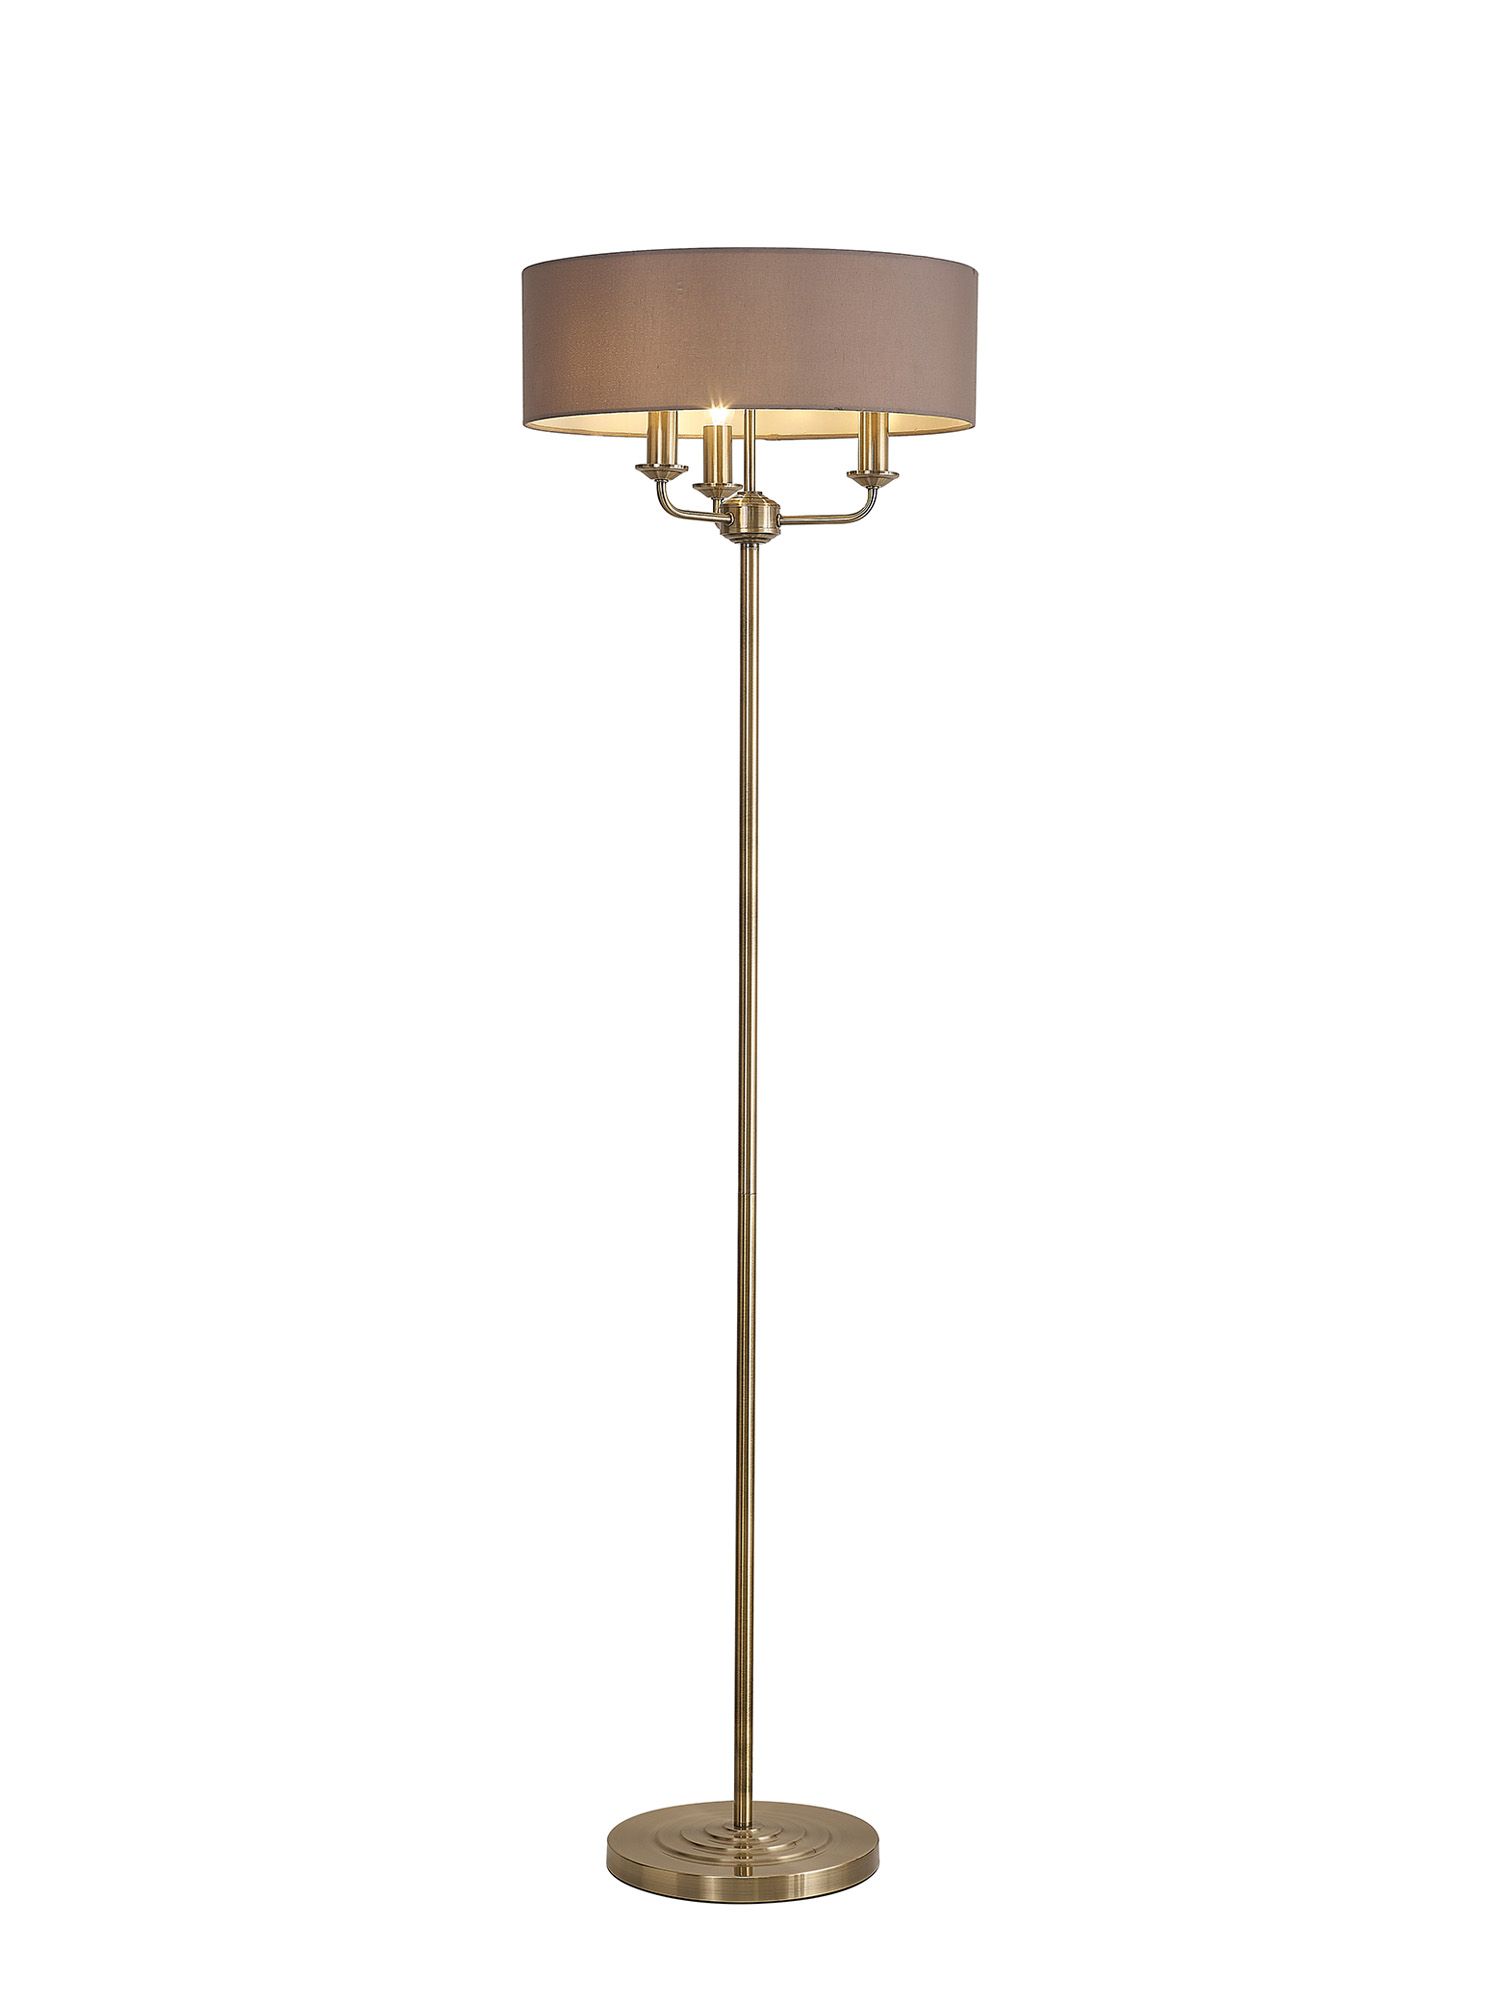 DK0902  Banyan 45cm 3 Light Floor Lamp Antique Brass; Grey